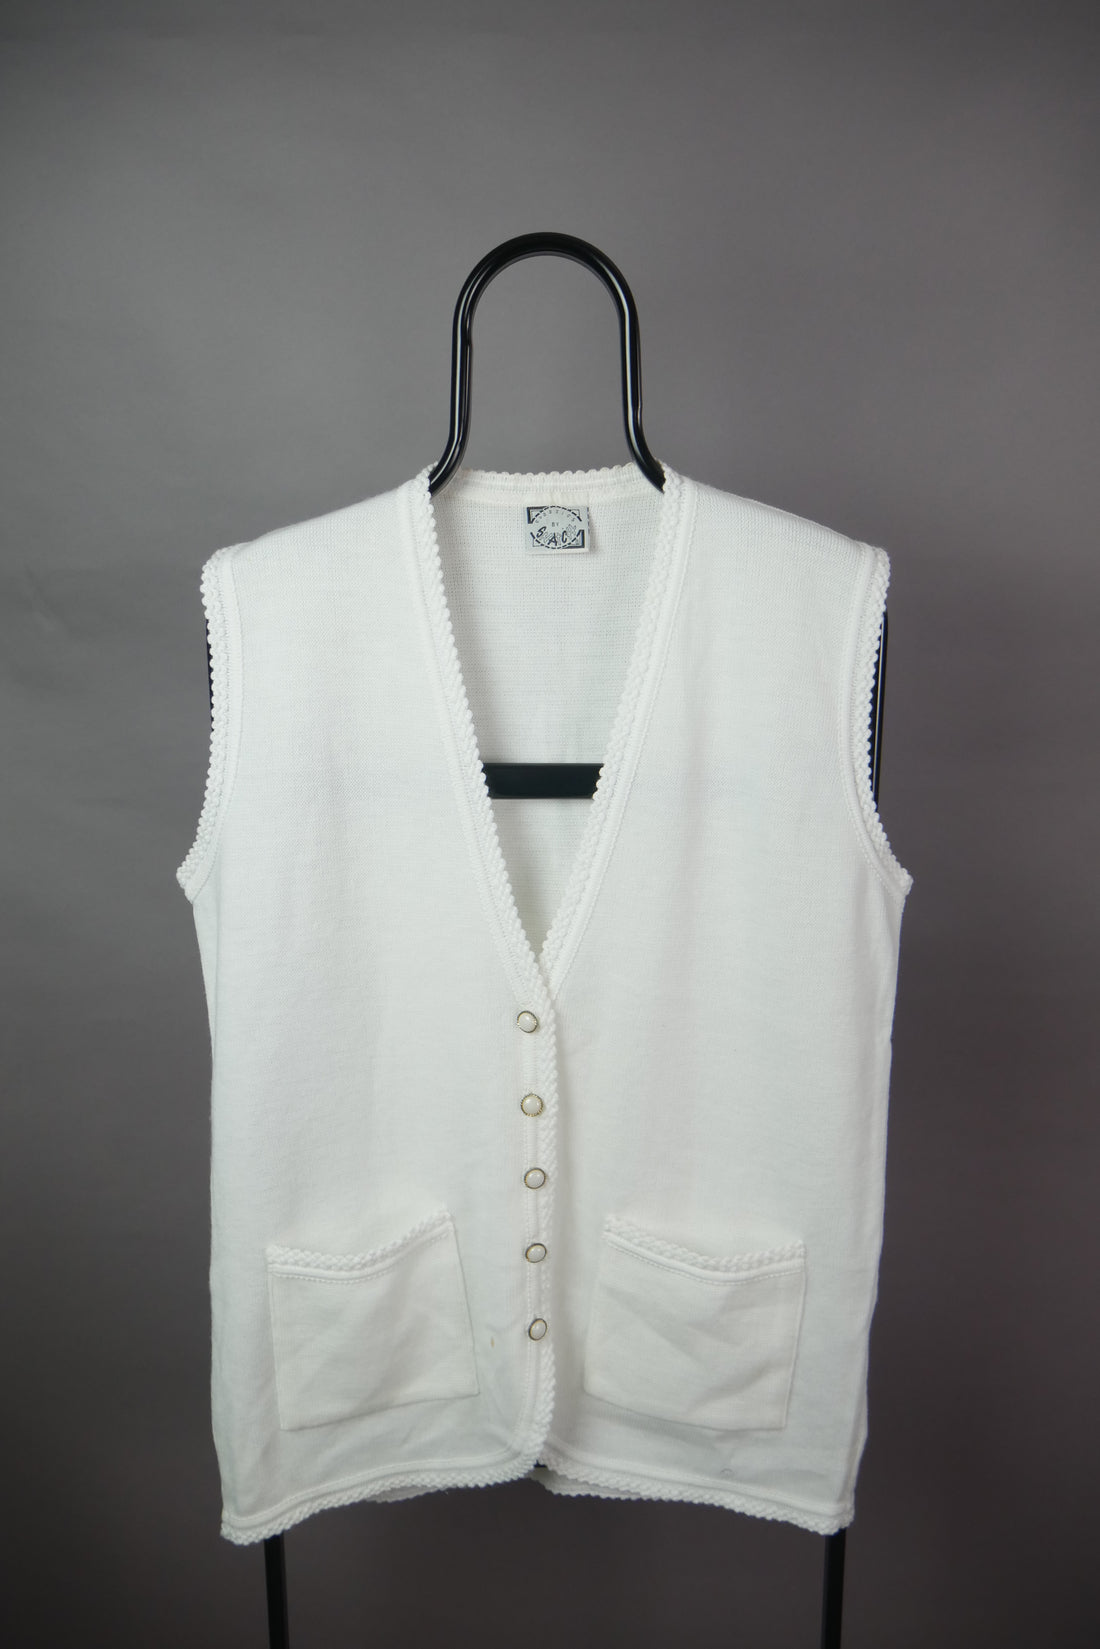 The Vintage Button Up Sweater Vest (Women's L)